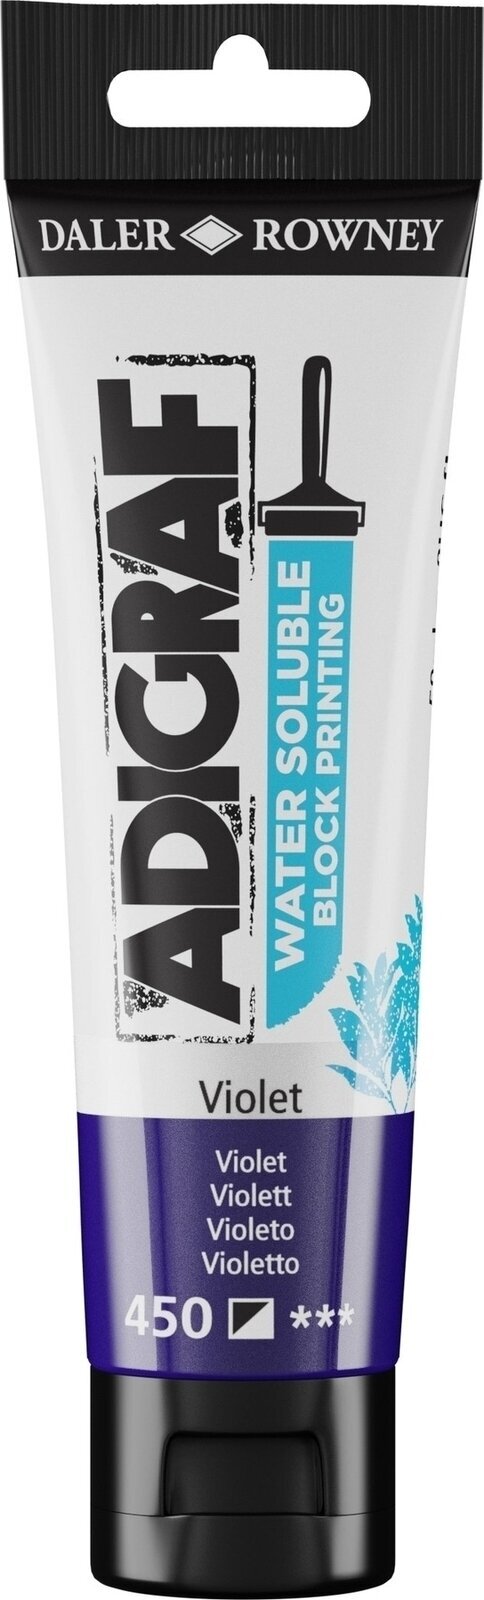 Verf voor linosnede Daler Rowney Adigraf Block Printing Water Soluble Colour Verf voor linosnede Violet 59 ml